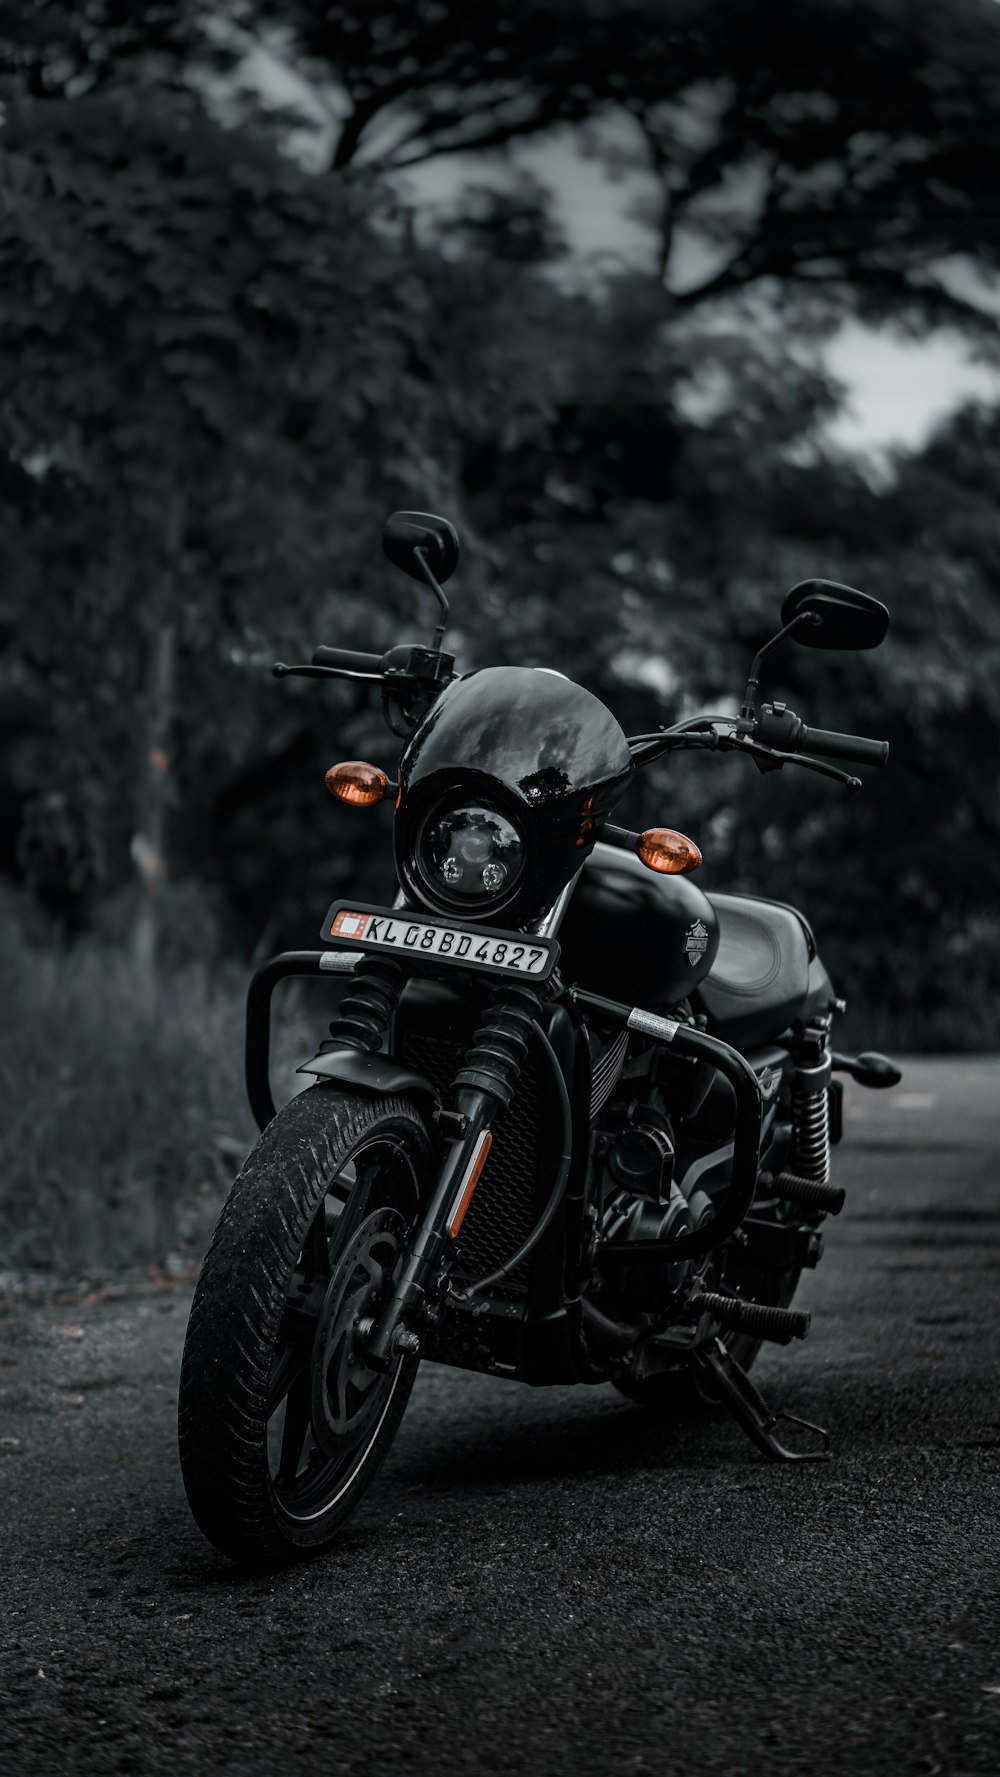 Motocicleta negra en la carretera durante el día